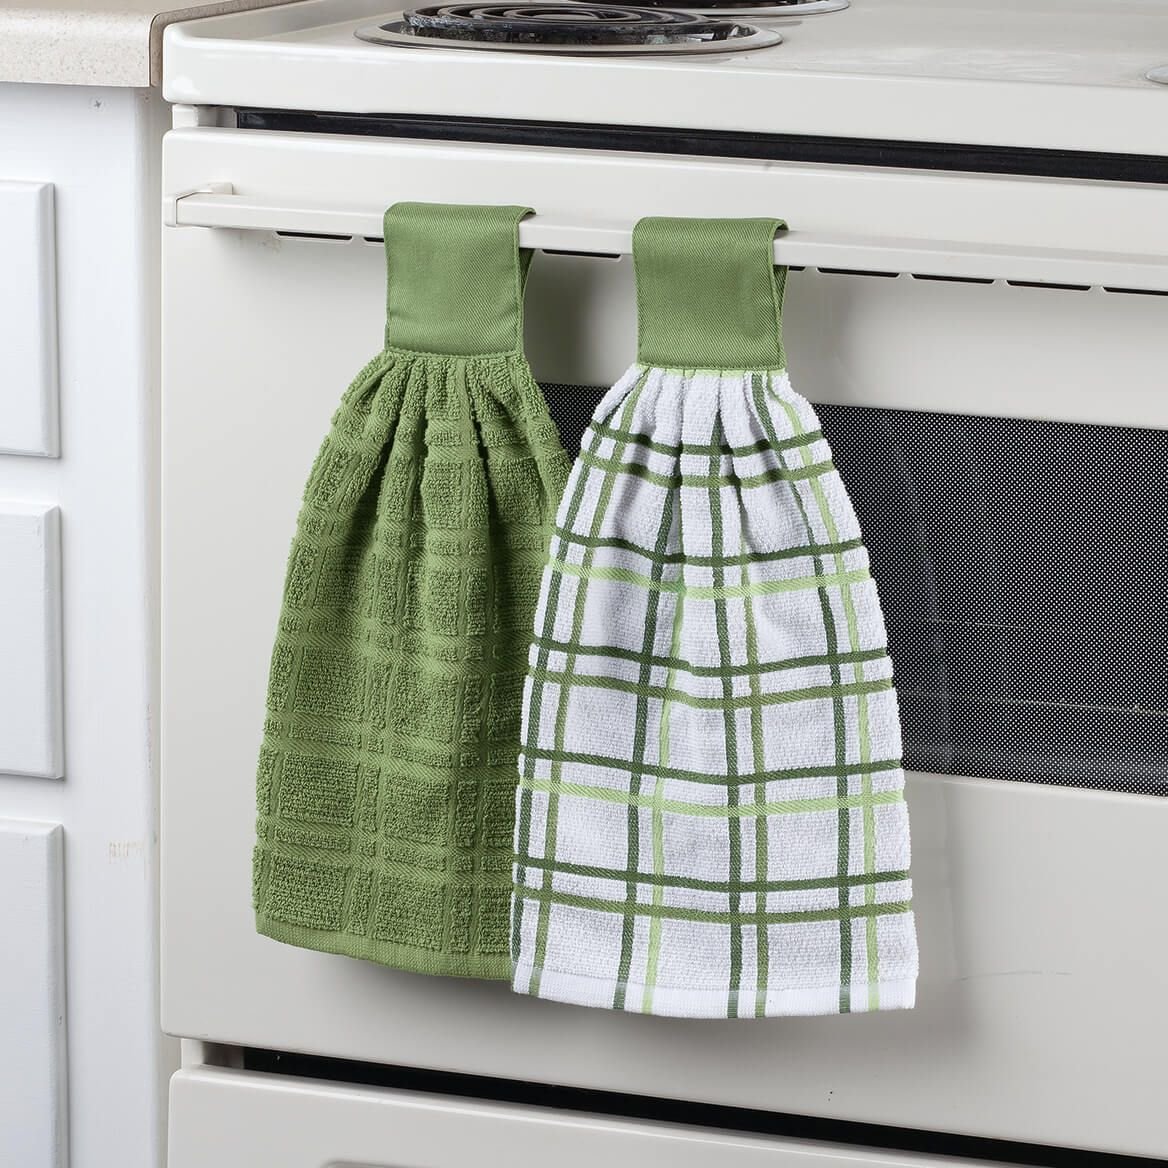 Сложенные кухонные полотенца. Красивые кухонные полотенца. Шьем кухонные полотенца. Красивые полотенца для кухни. Дизайнерские кухонные полотенца.